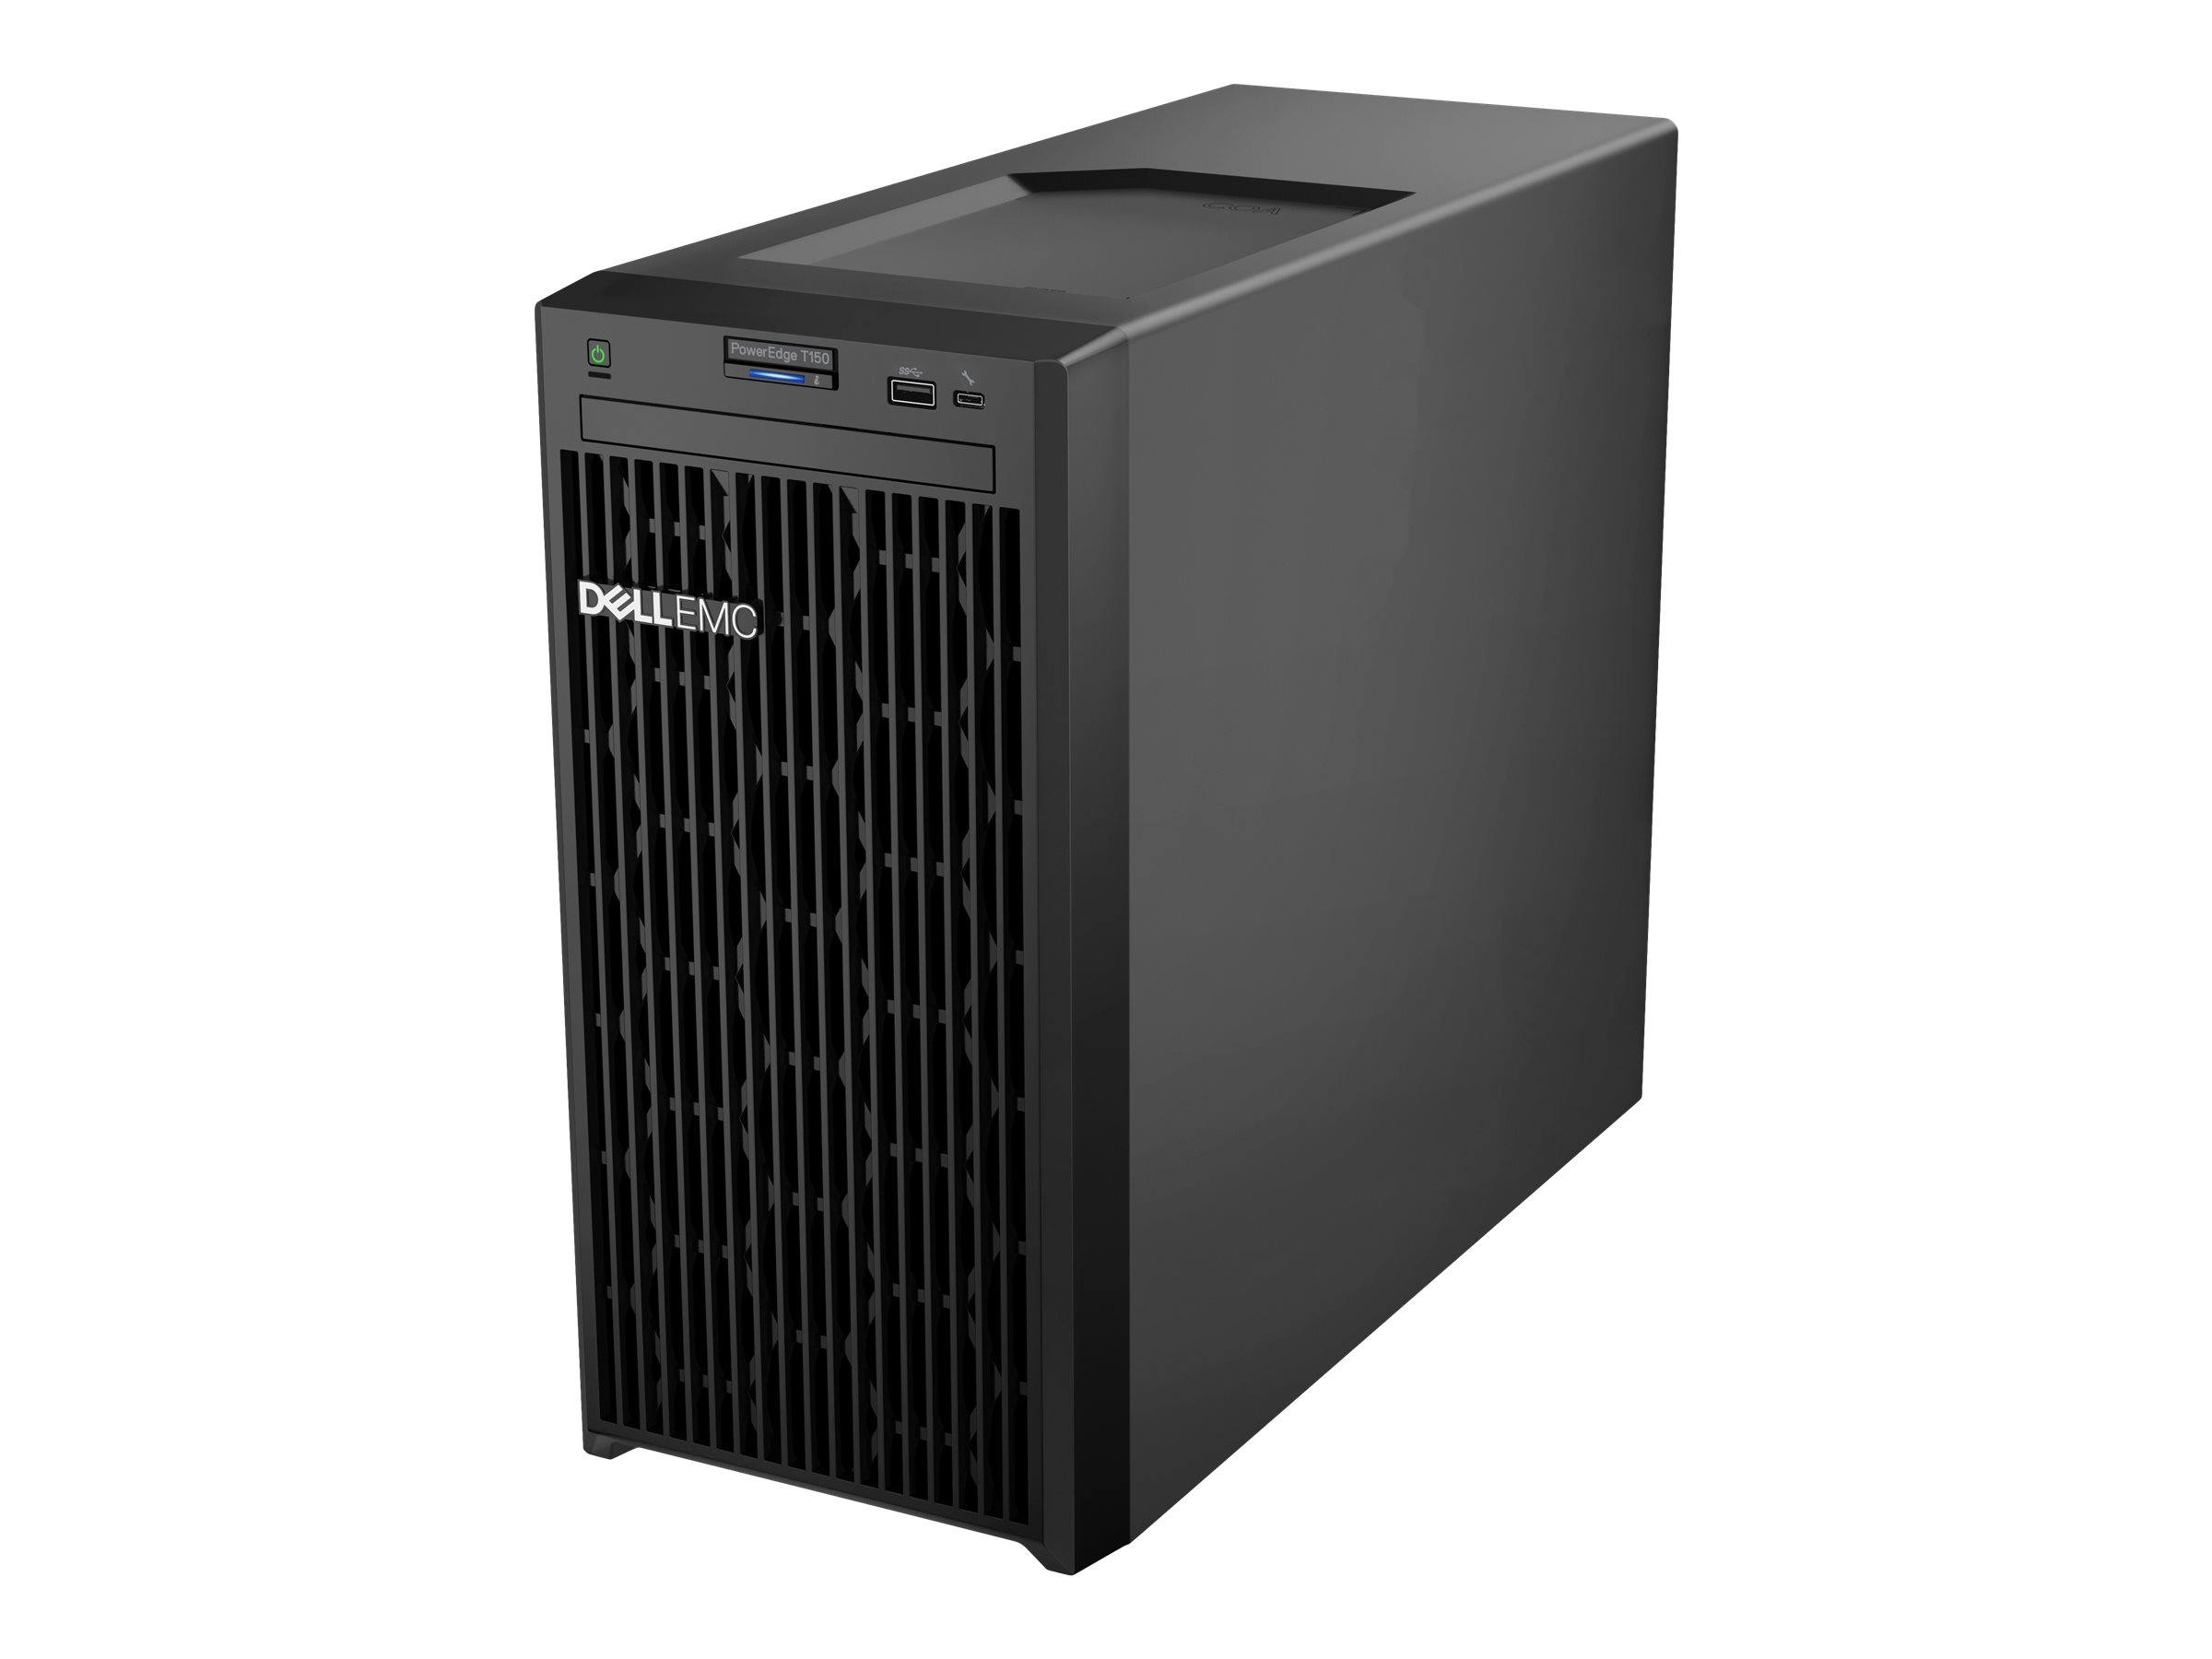 Dell PowerEdge T150 - Server - MT - 1-Weg - 1 x Xeon E-2314 / 2.8 GHz - RAM 8 GB - HDD 1 TB - Matrox G200 - 1GbE - kein Betriebssystem - Monitor: keiner - Schwarz - BTP - mit 3 Jahre Basis Vor-Ort